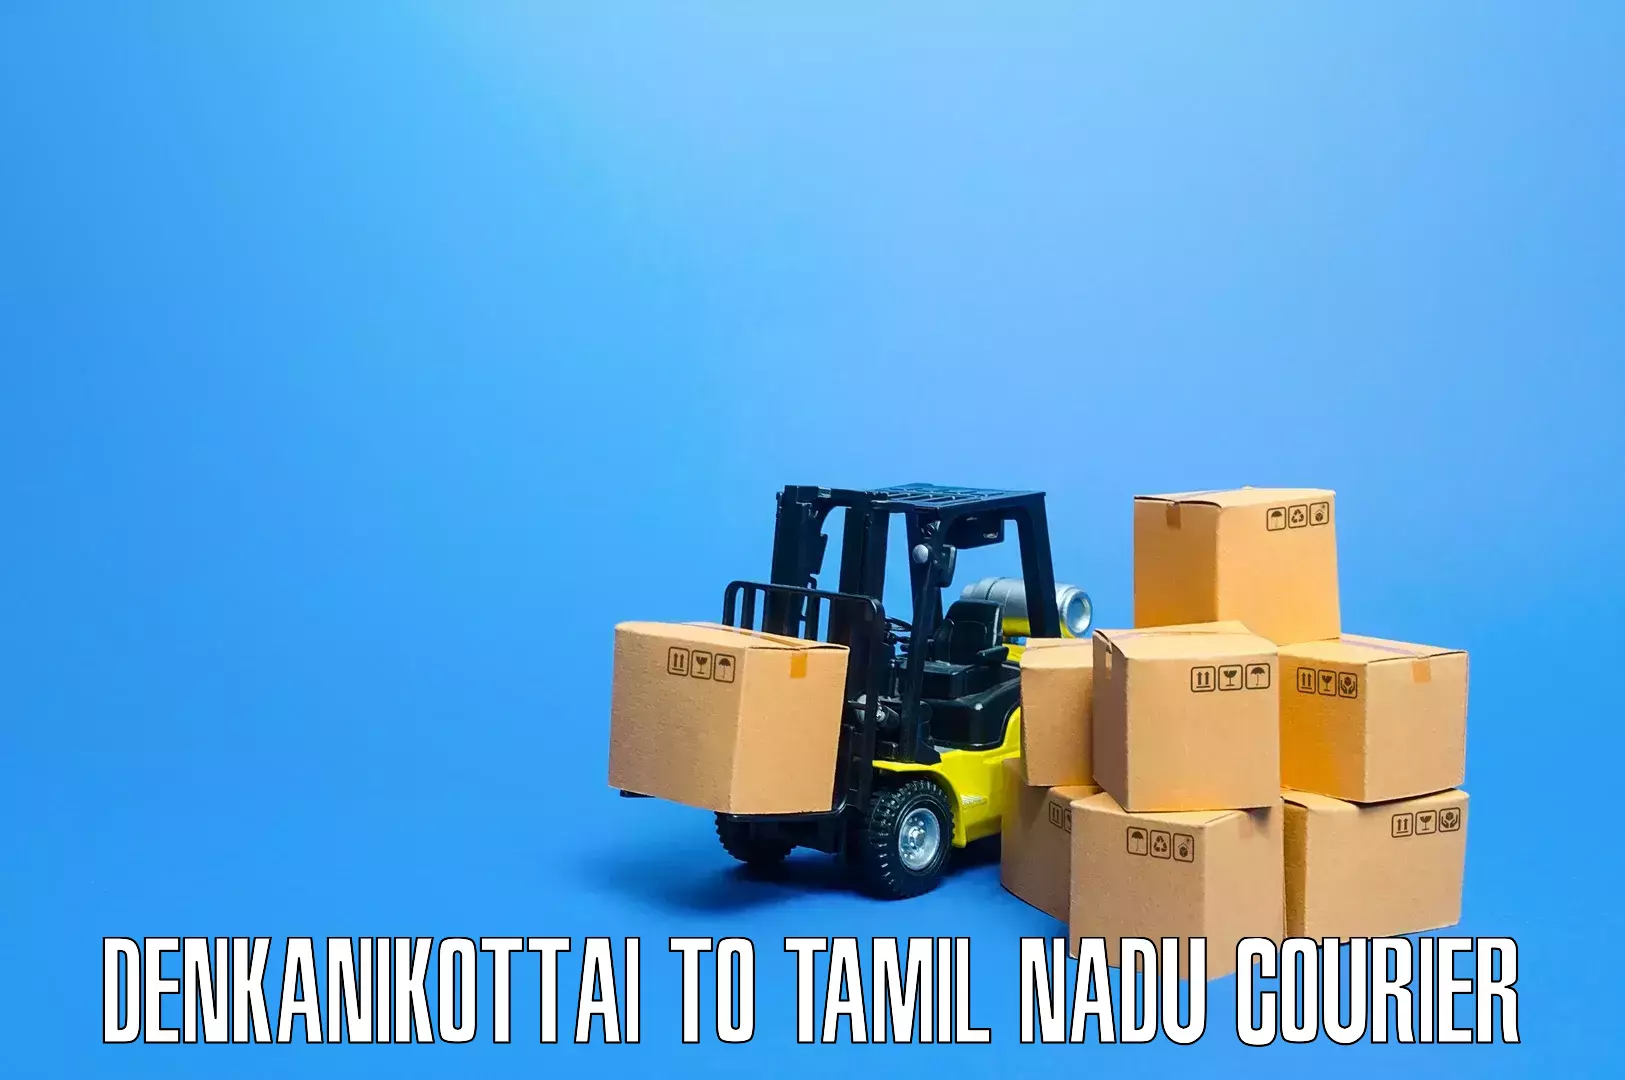 Specialized furniture movers Denkanikottai to Tamil Nadu